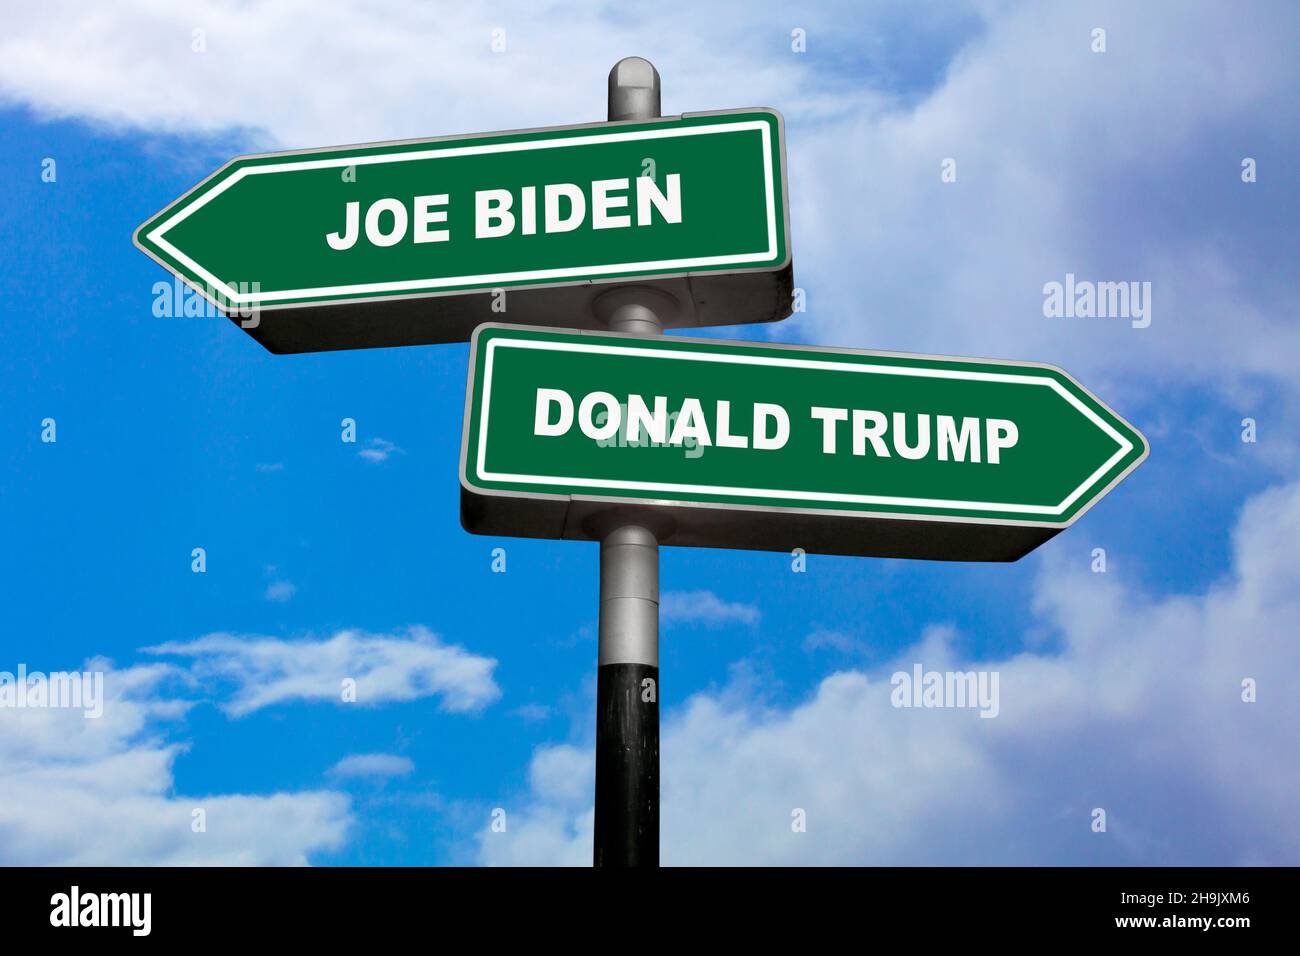 Deux signaux de direction, l'un pointant vers la gauche (Joe Biden) et l'autre, pointant vers la droite (Donald Trump). Banque D'Images